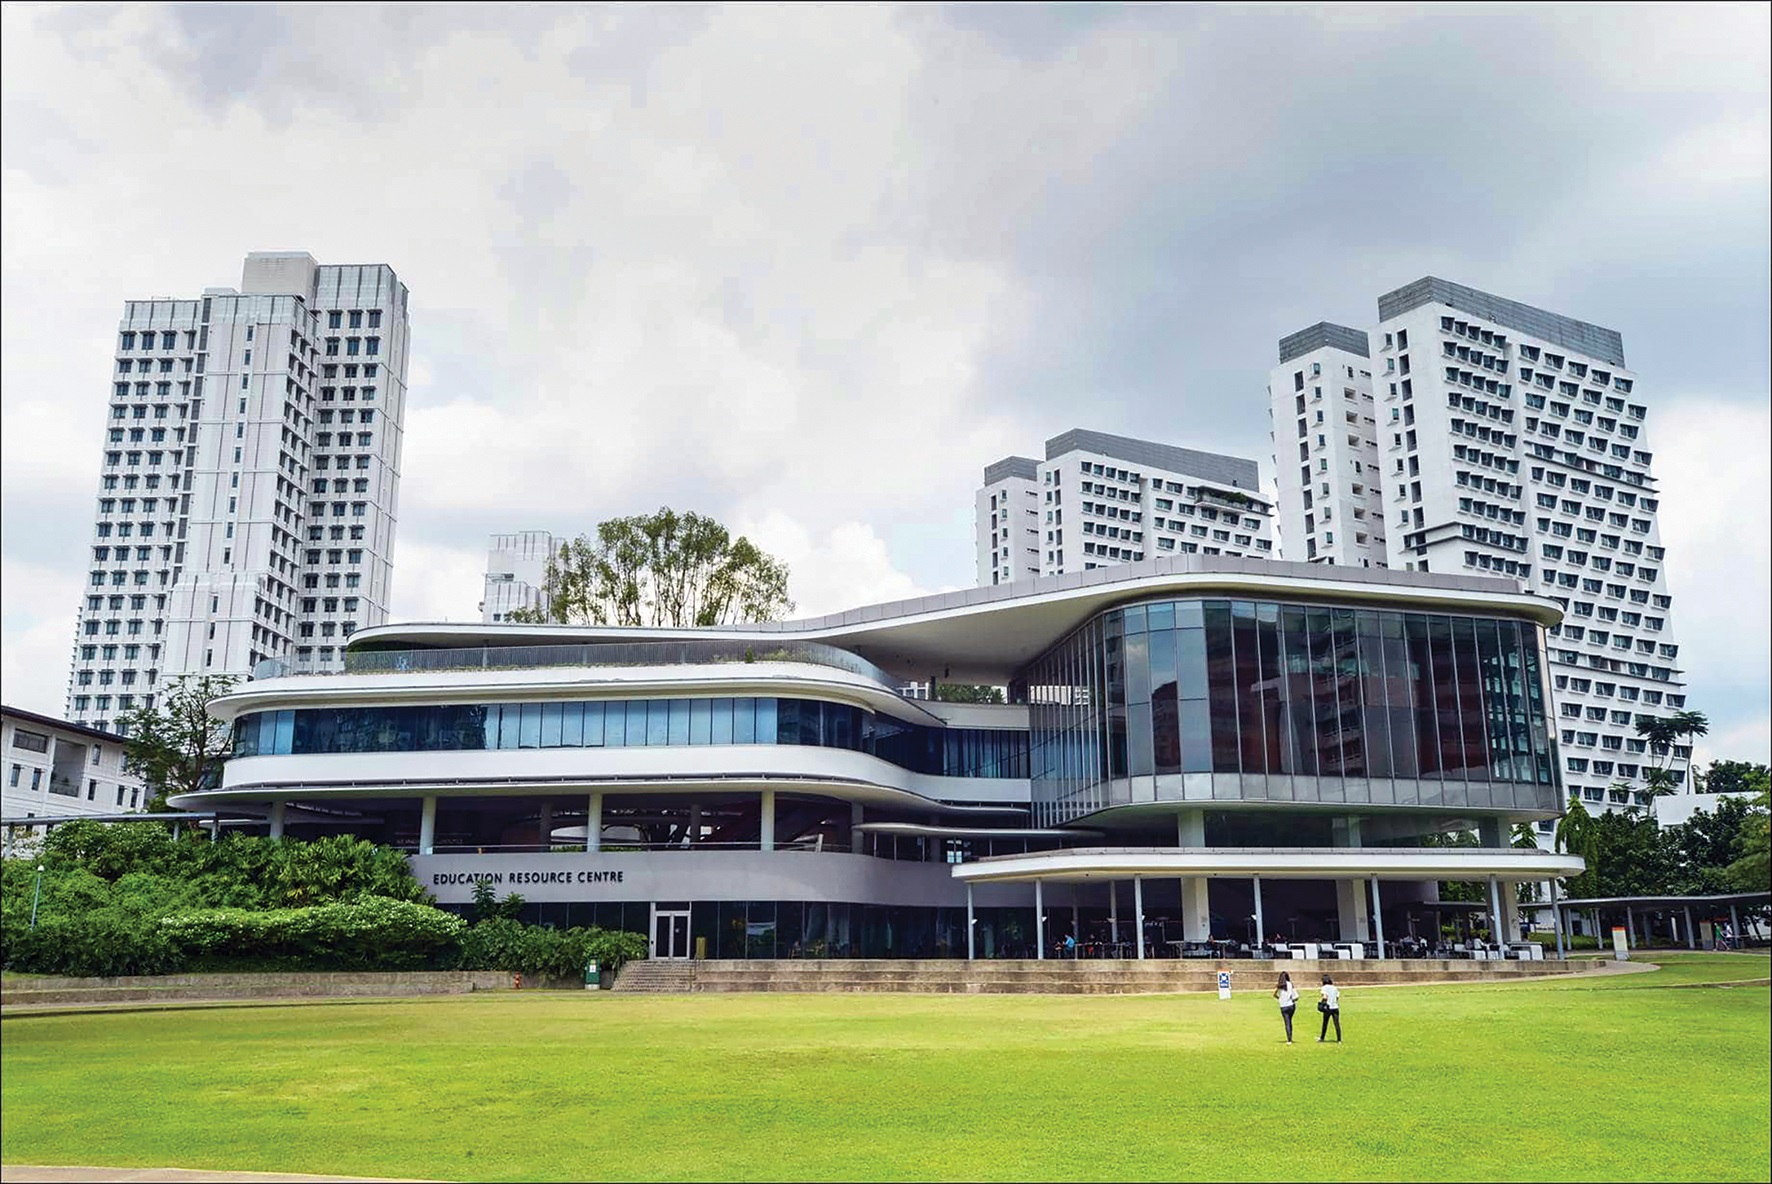 فناوری روز و دانشجوی خارجی عامل رشد دانشگاه های سنگاپور